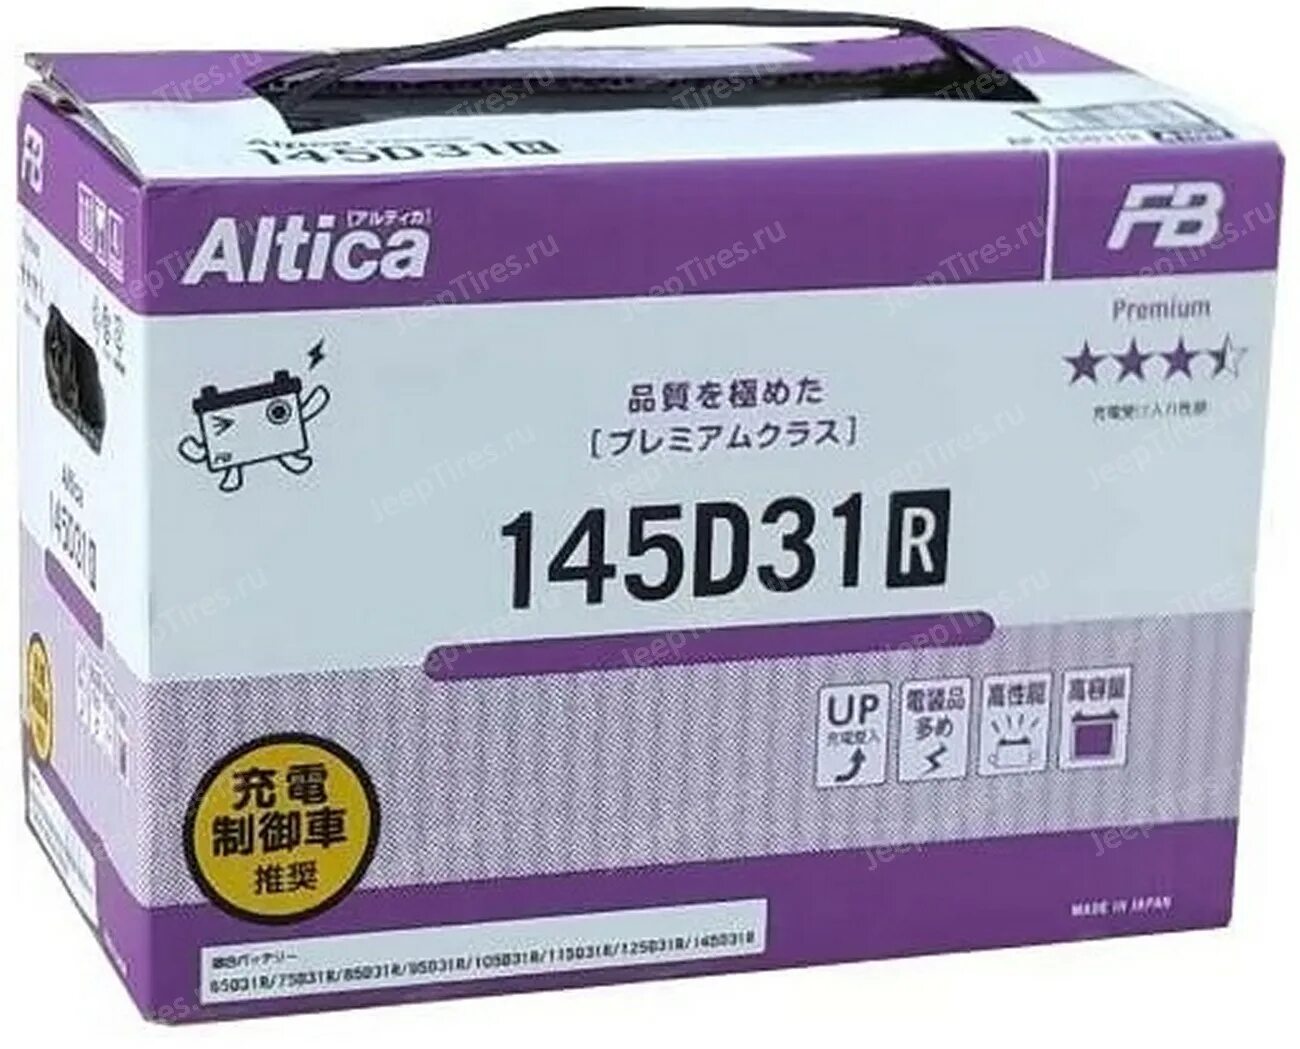 Fb Altica Premium 145d31r. Аккумулятор fb Altica Premium 98 Ah, 145d31r. Furukawa Battery ln2 (din 65). 145d31l Furukawa.